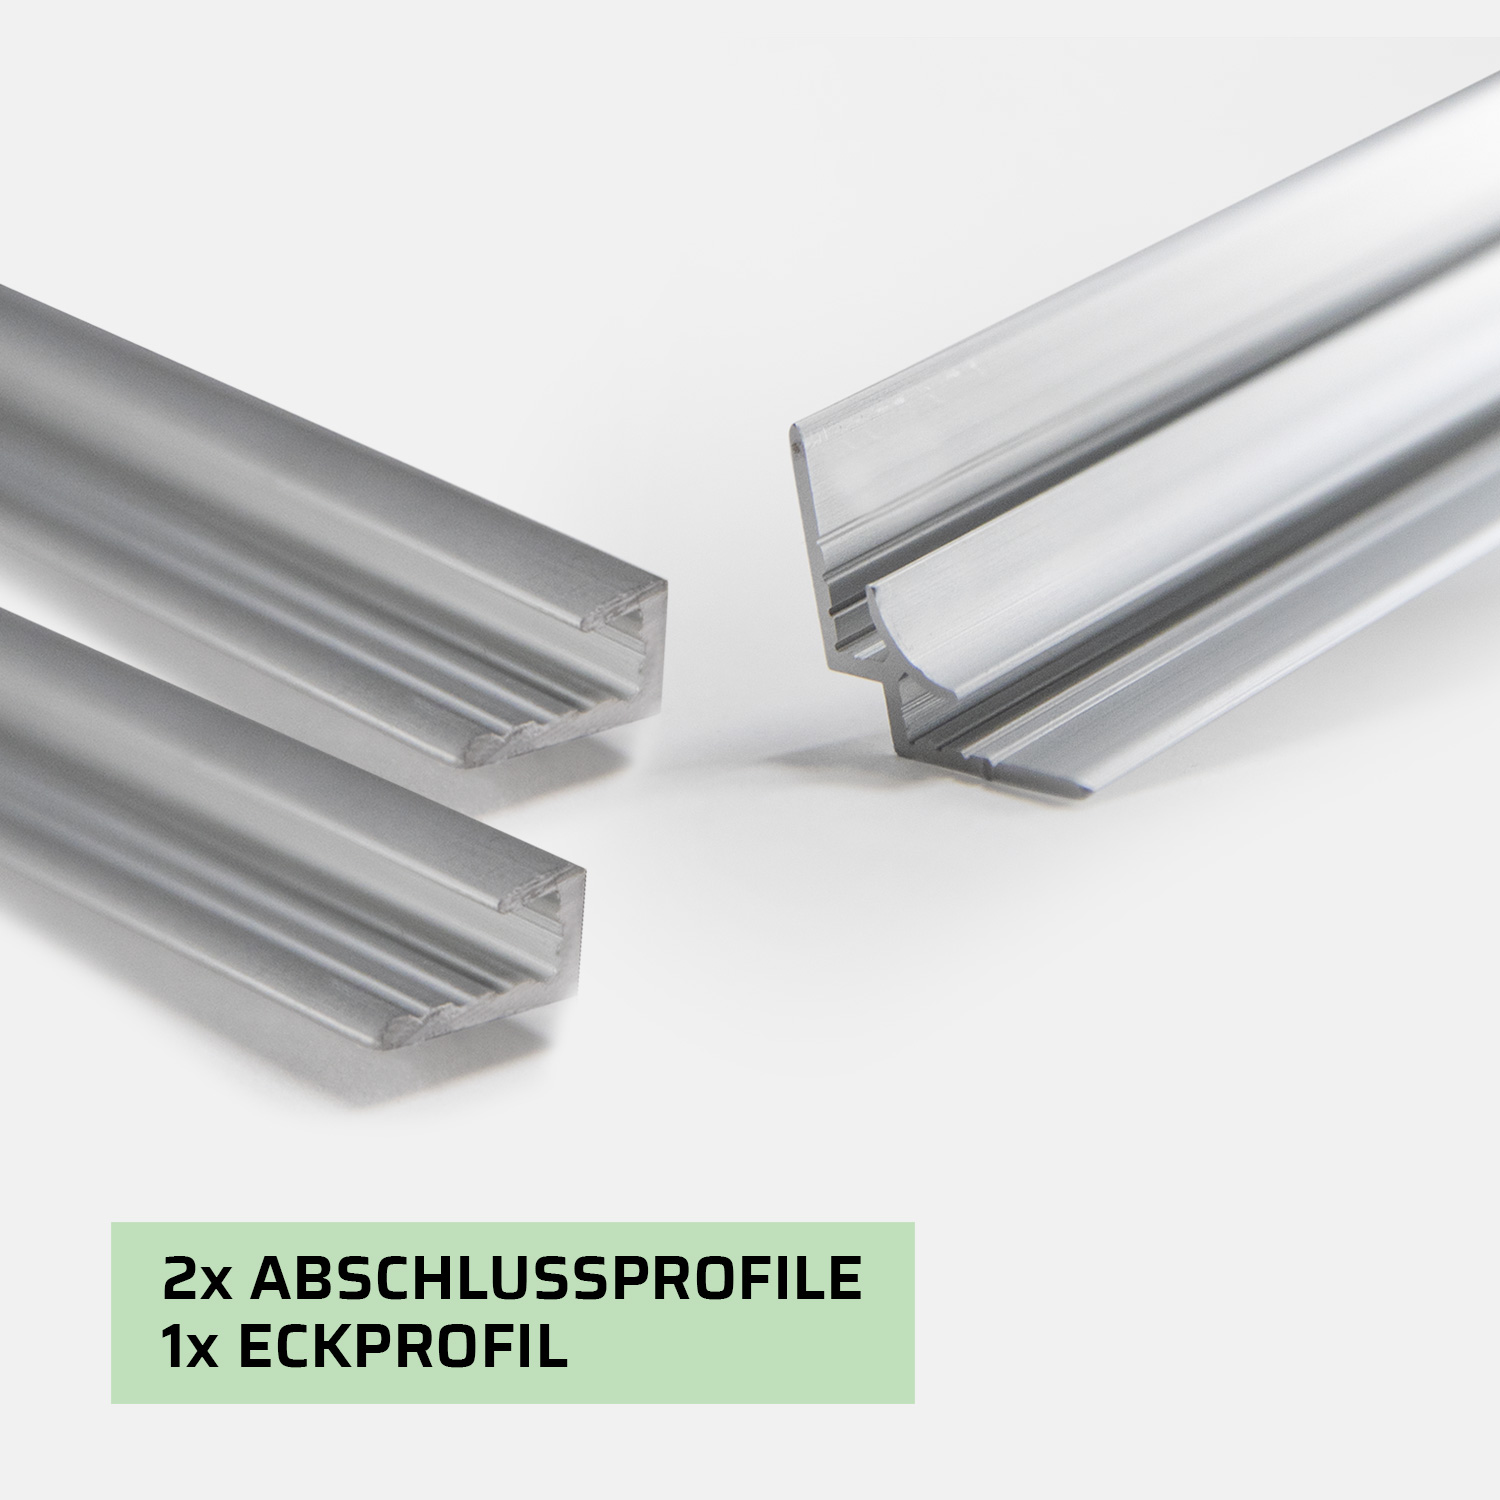 Aluminium Profilset: 2x Abschlussprofile und 1x Eckprofil für 3mm Rückwände, Länge: 2000mm